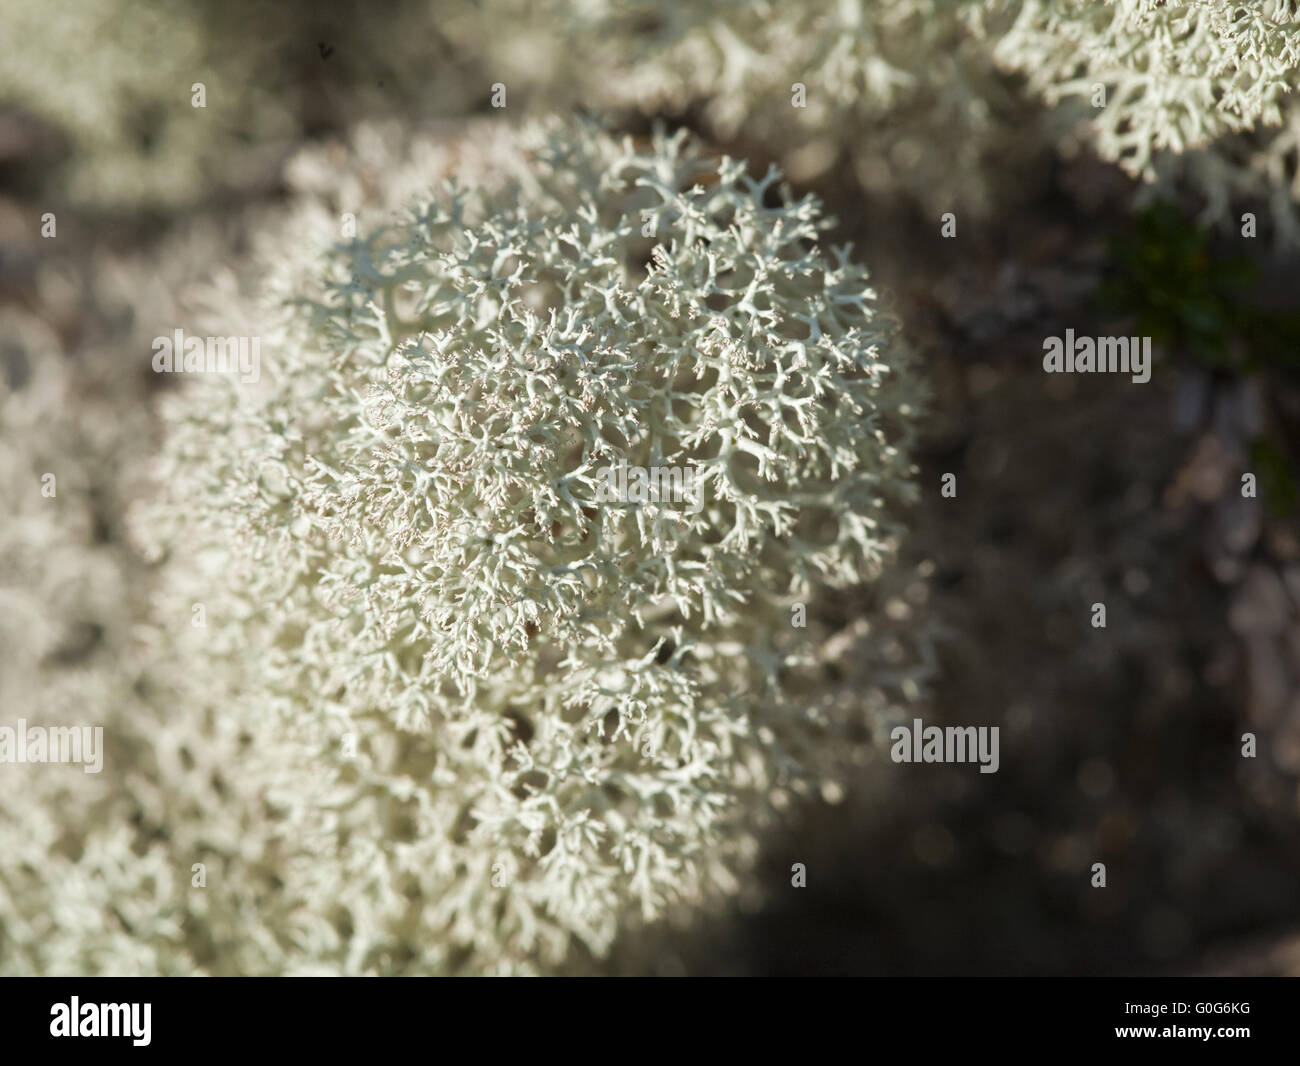 Reindeer lichen, close-up Stock Photo